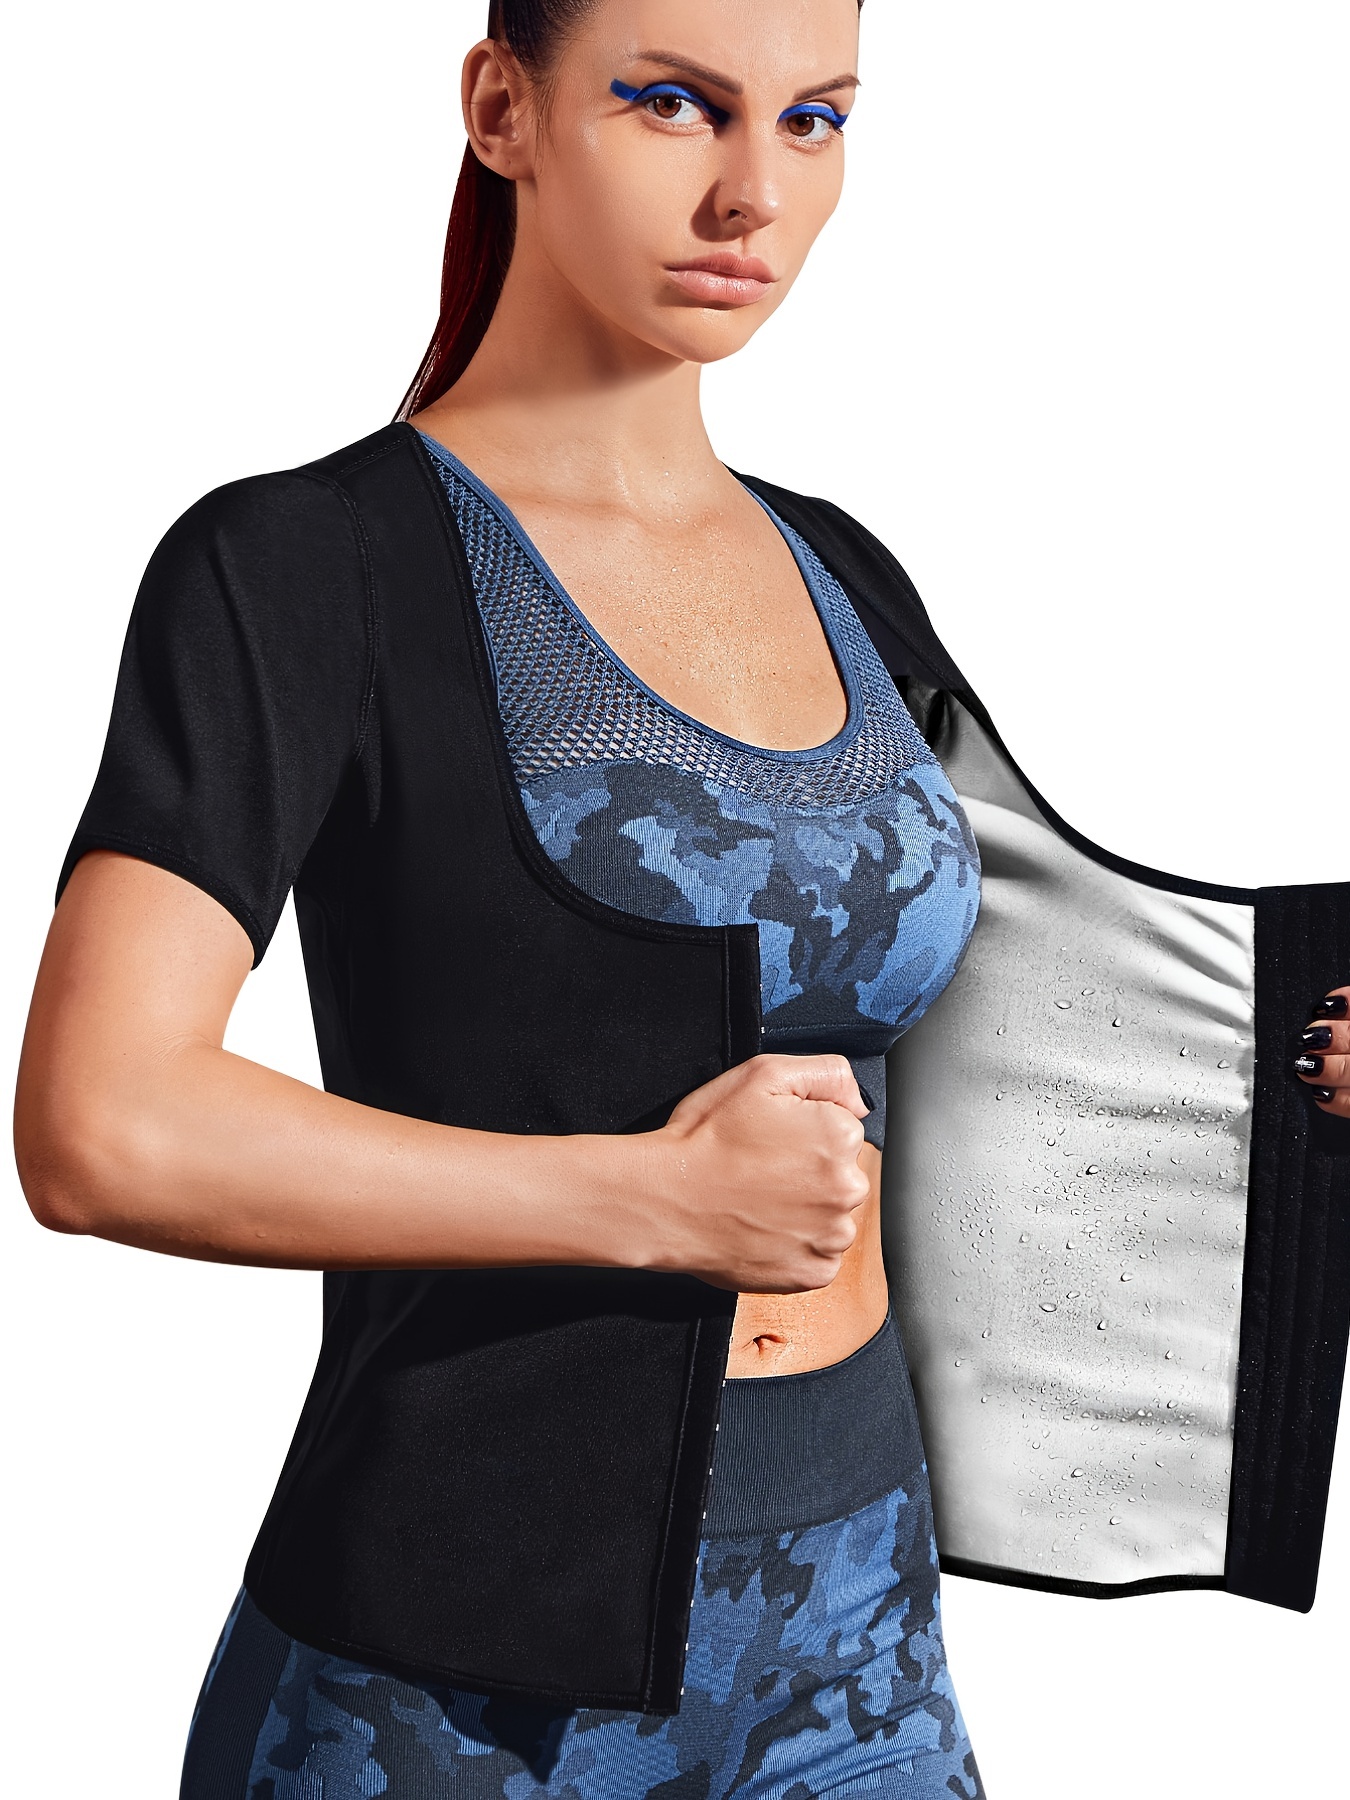 Women's Sauna Sweat Suit Waist Trainer T-Shirt Body Shaper Shirt  Compression Workout Top Light Weight Adjustable Waist Trainer Corset